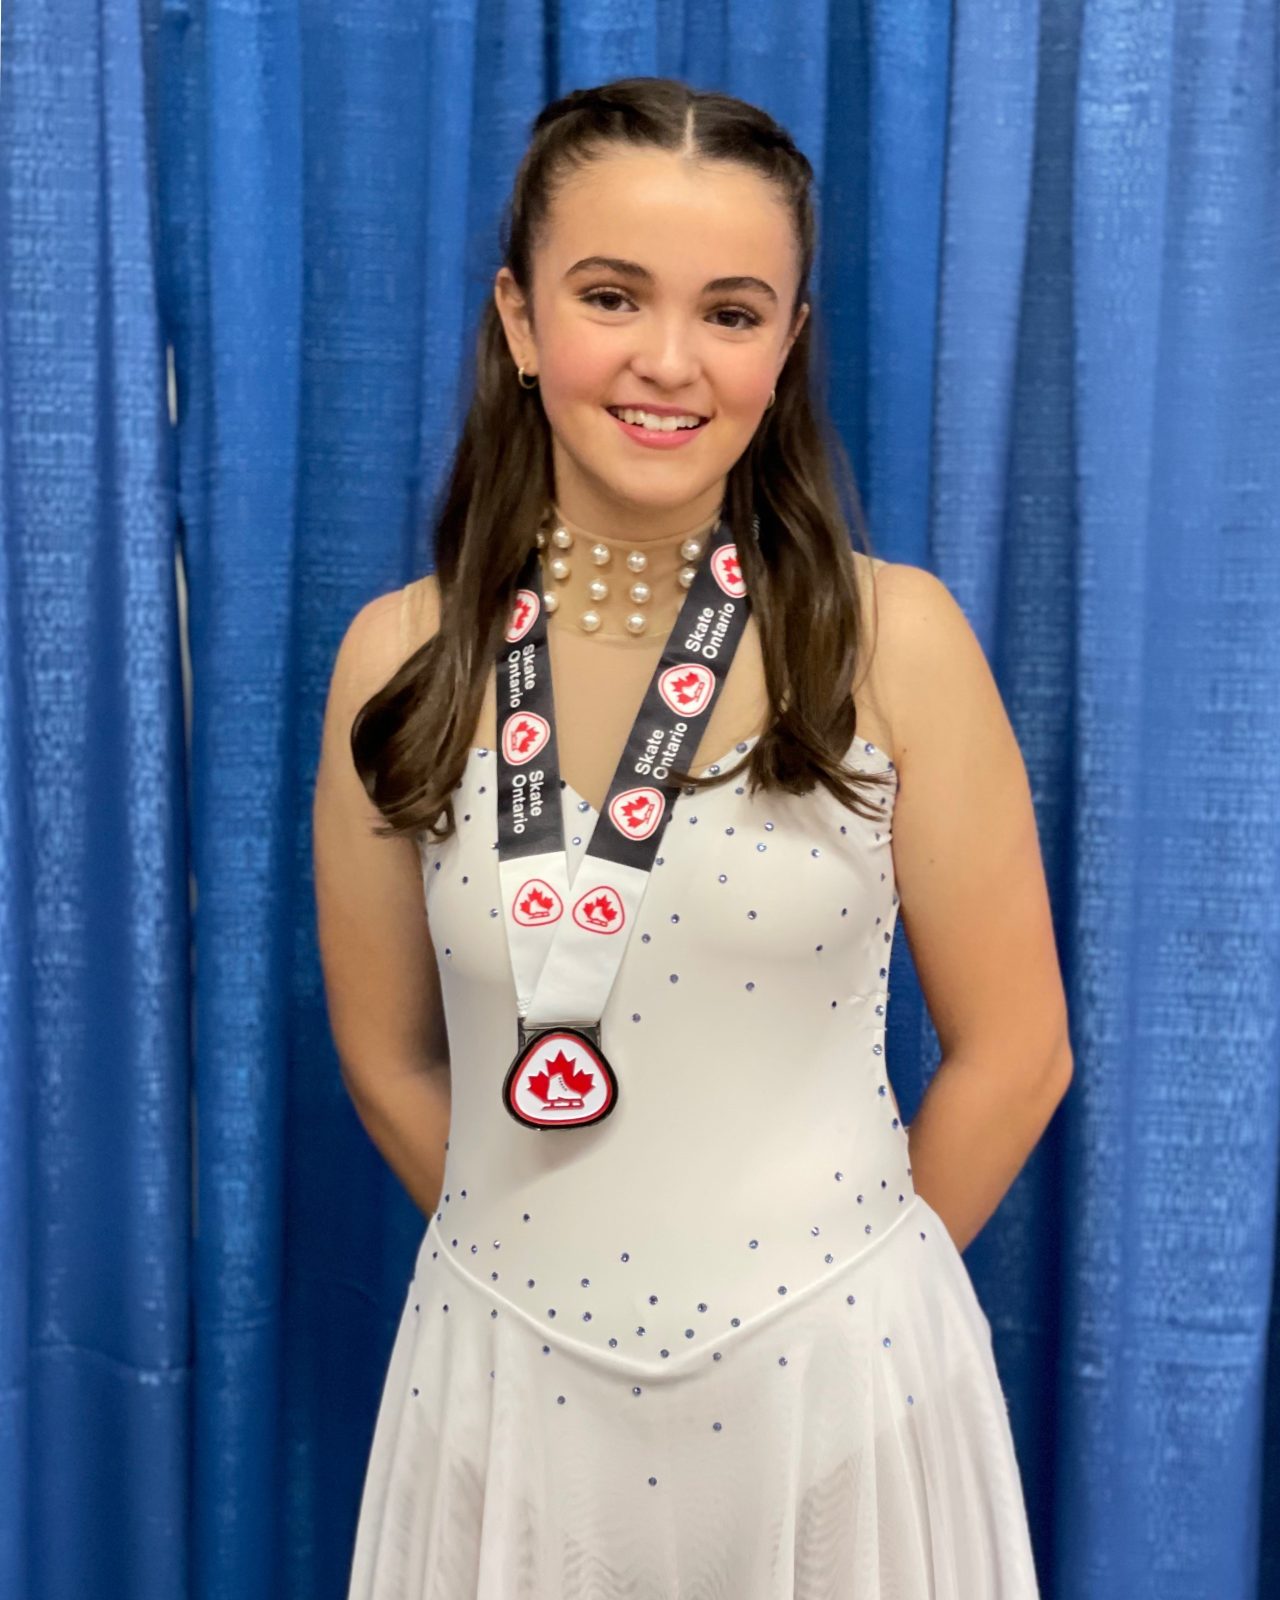 Alessia MacDonald wins Silver at Provincials